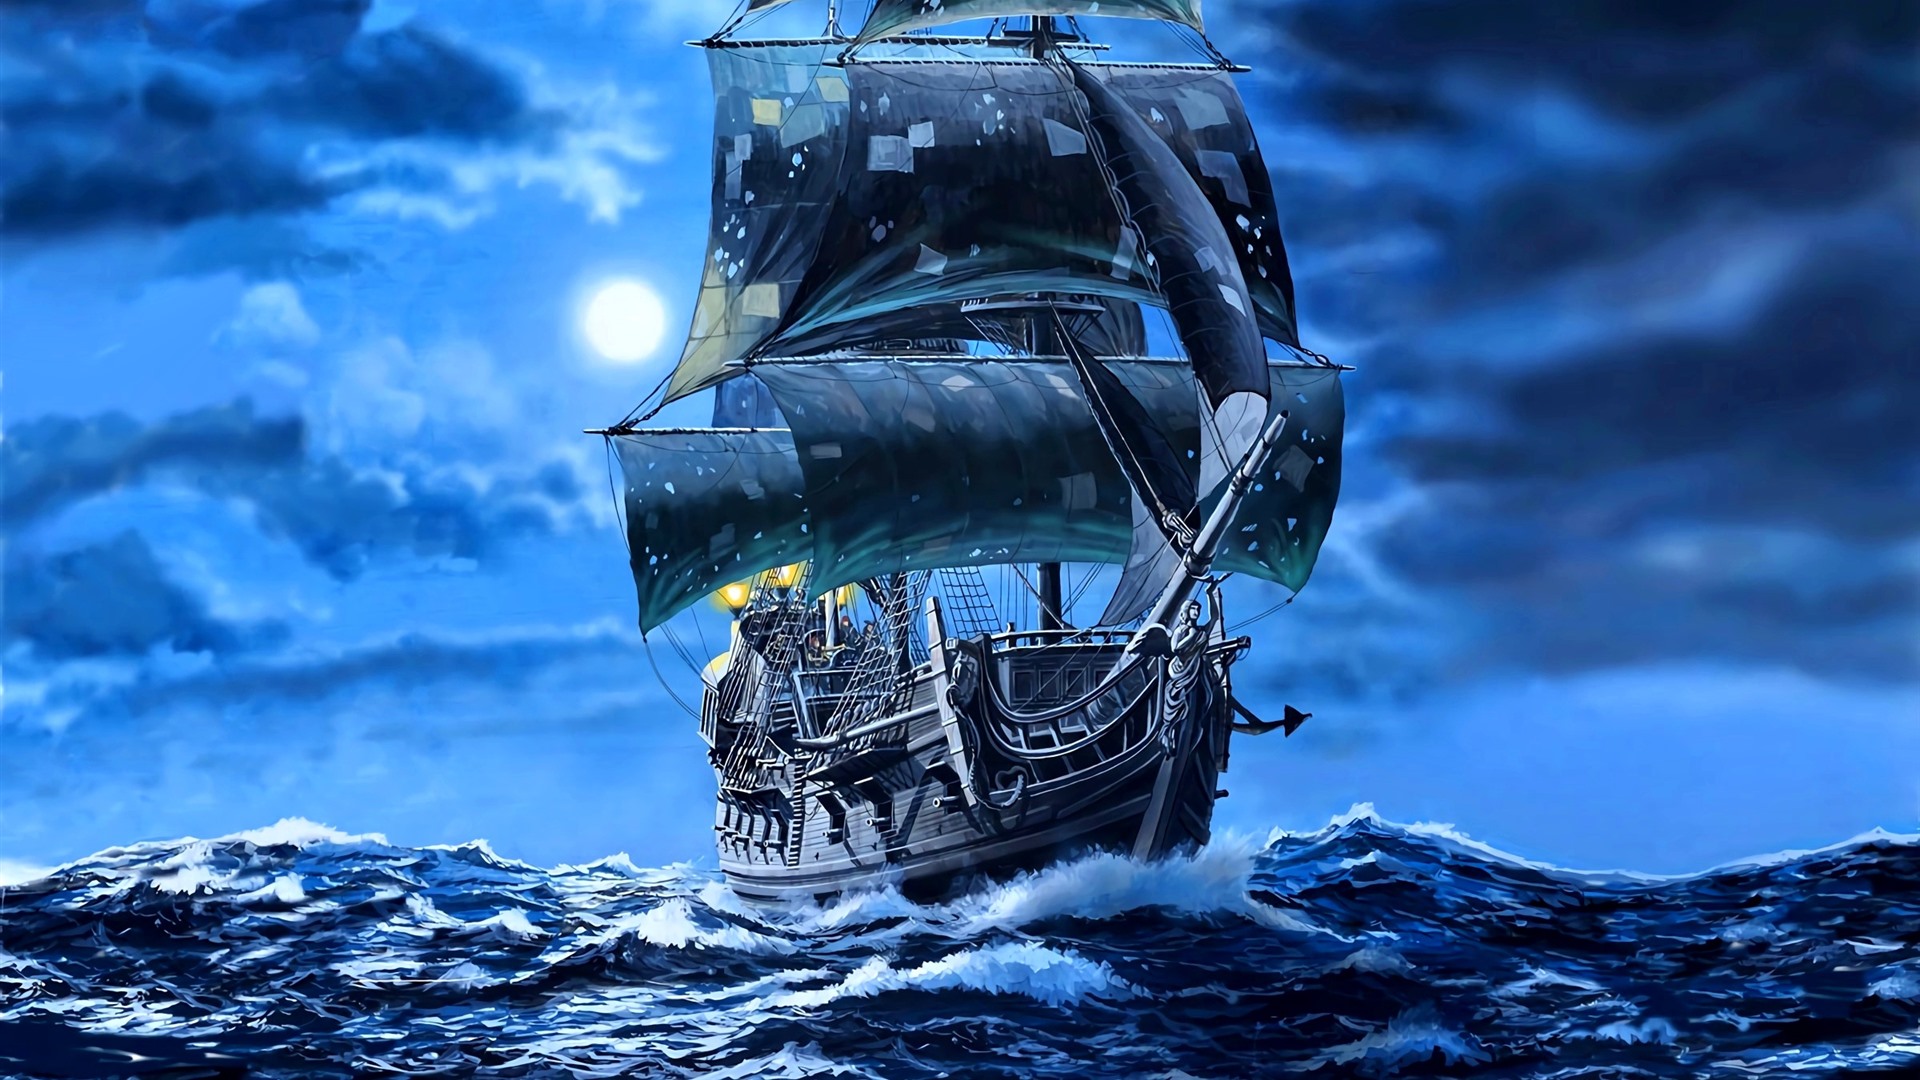 barco de perlas negras fondo de pantalla hd,vehículo,galeón,embarcacion,embarcación,barco fantasma